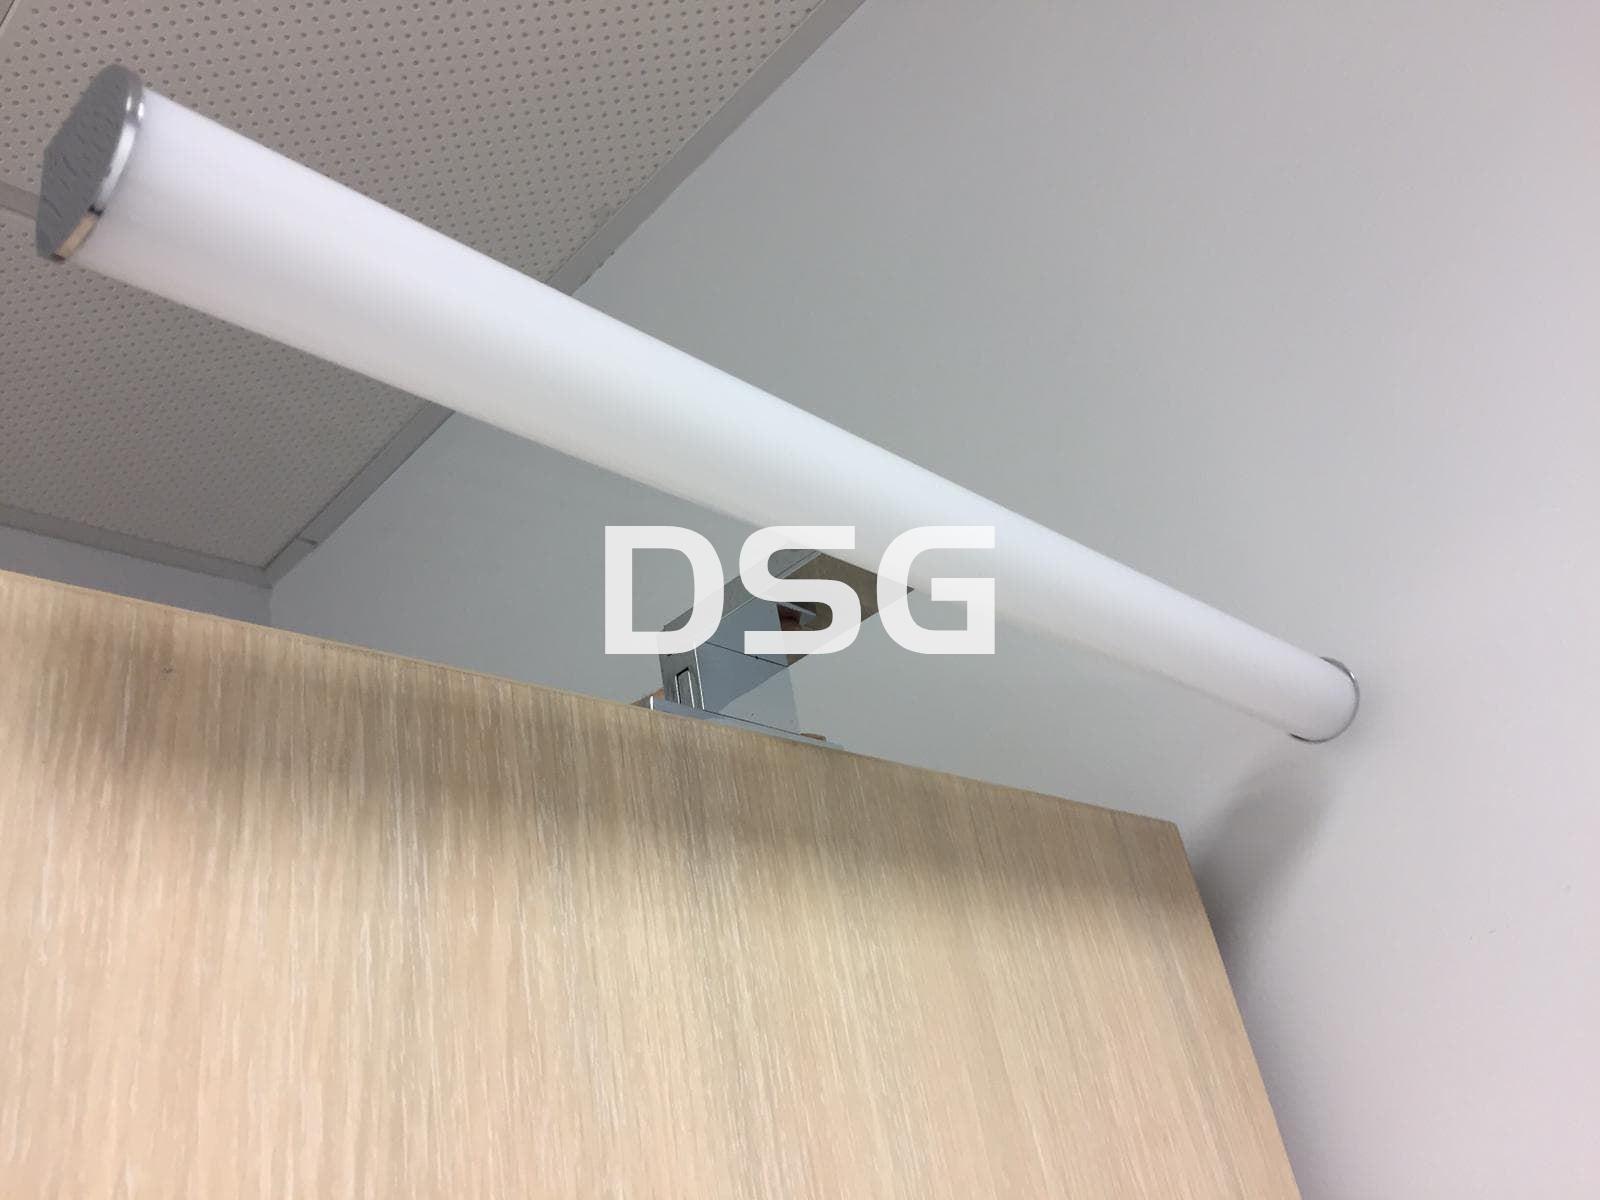 Aplique DSG9 45cm - Imagen 1